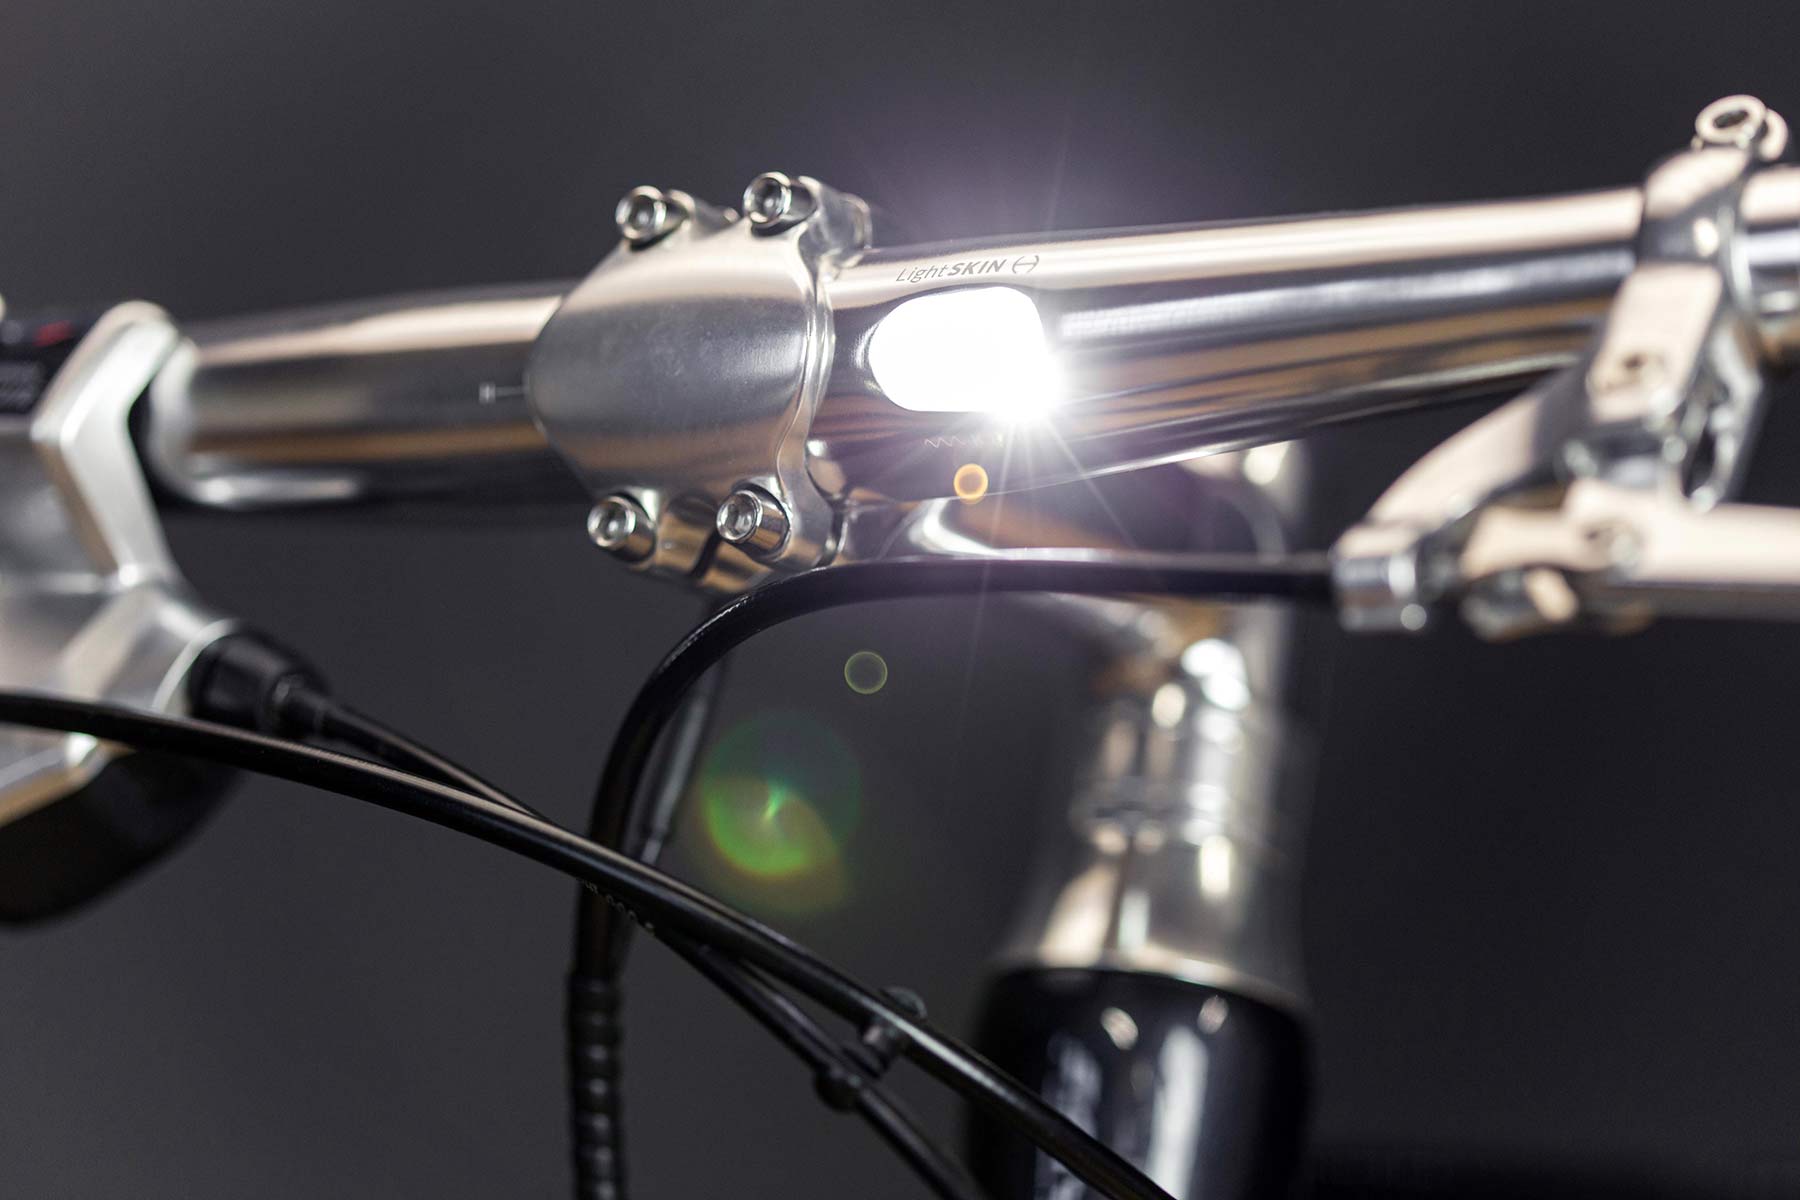 Schindelhauer x LightSkin alloy handlebar hidden LED headlight, dynamo-powered, front